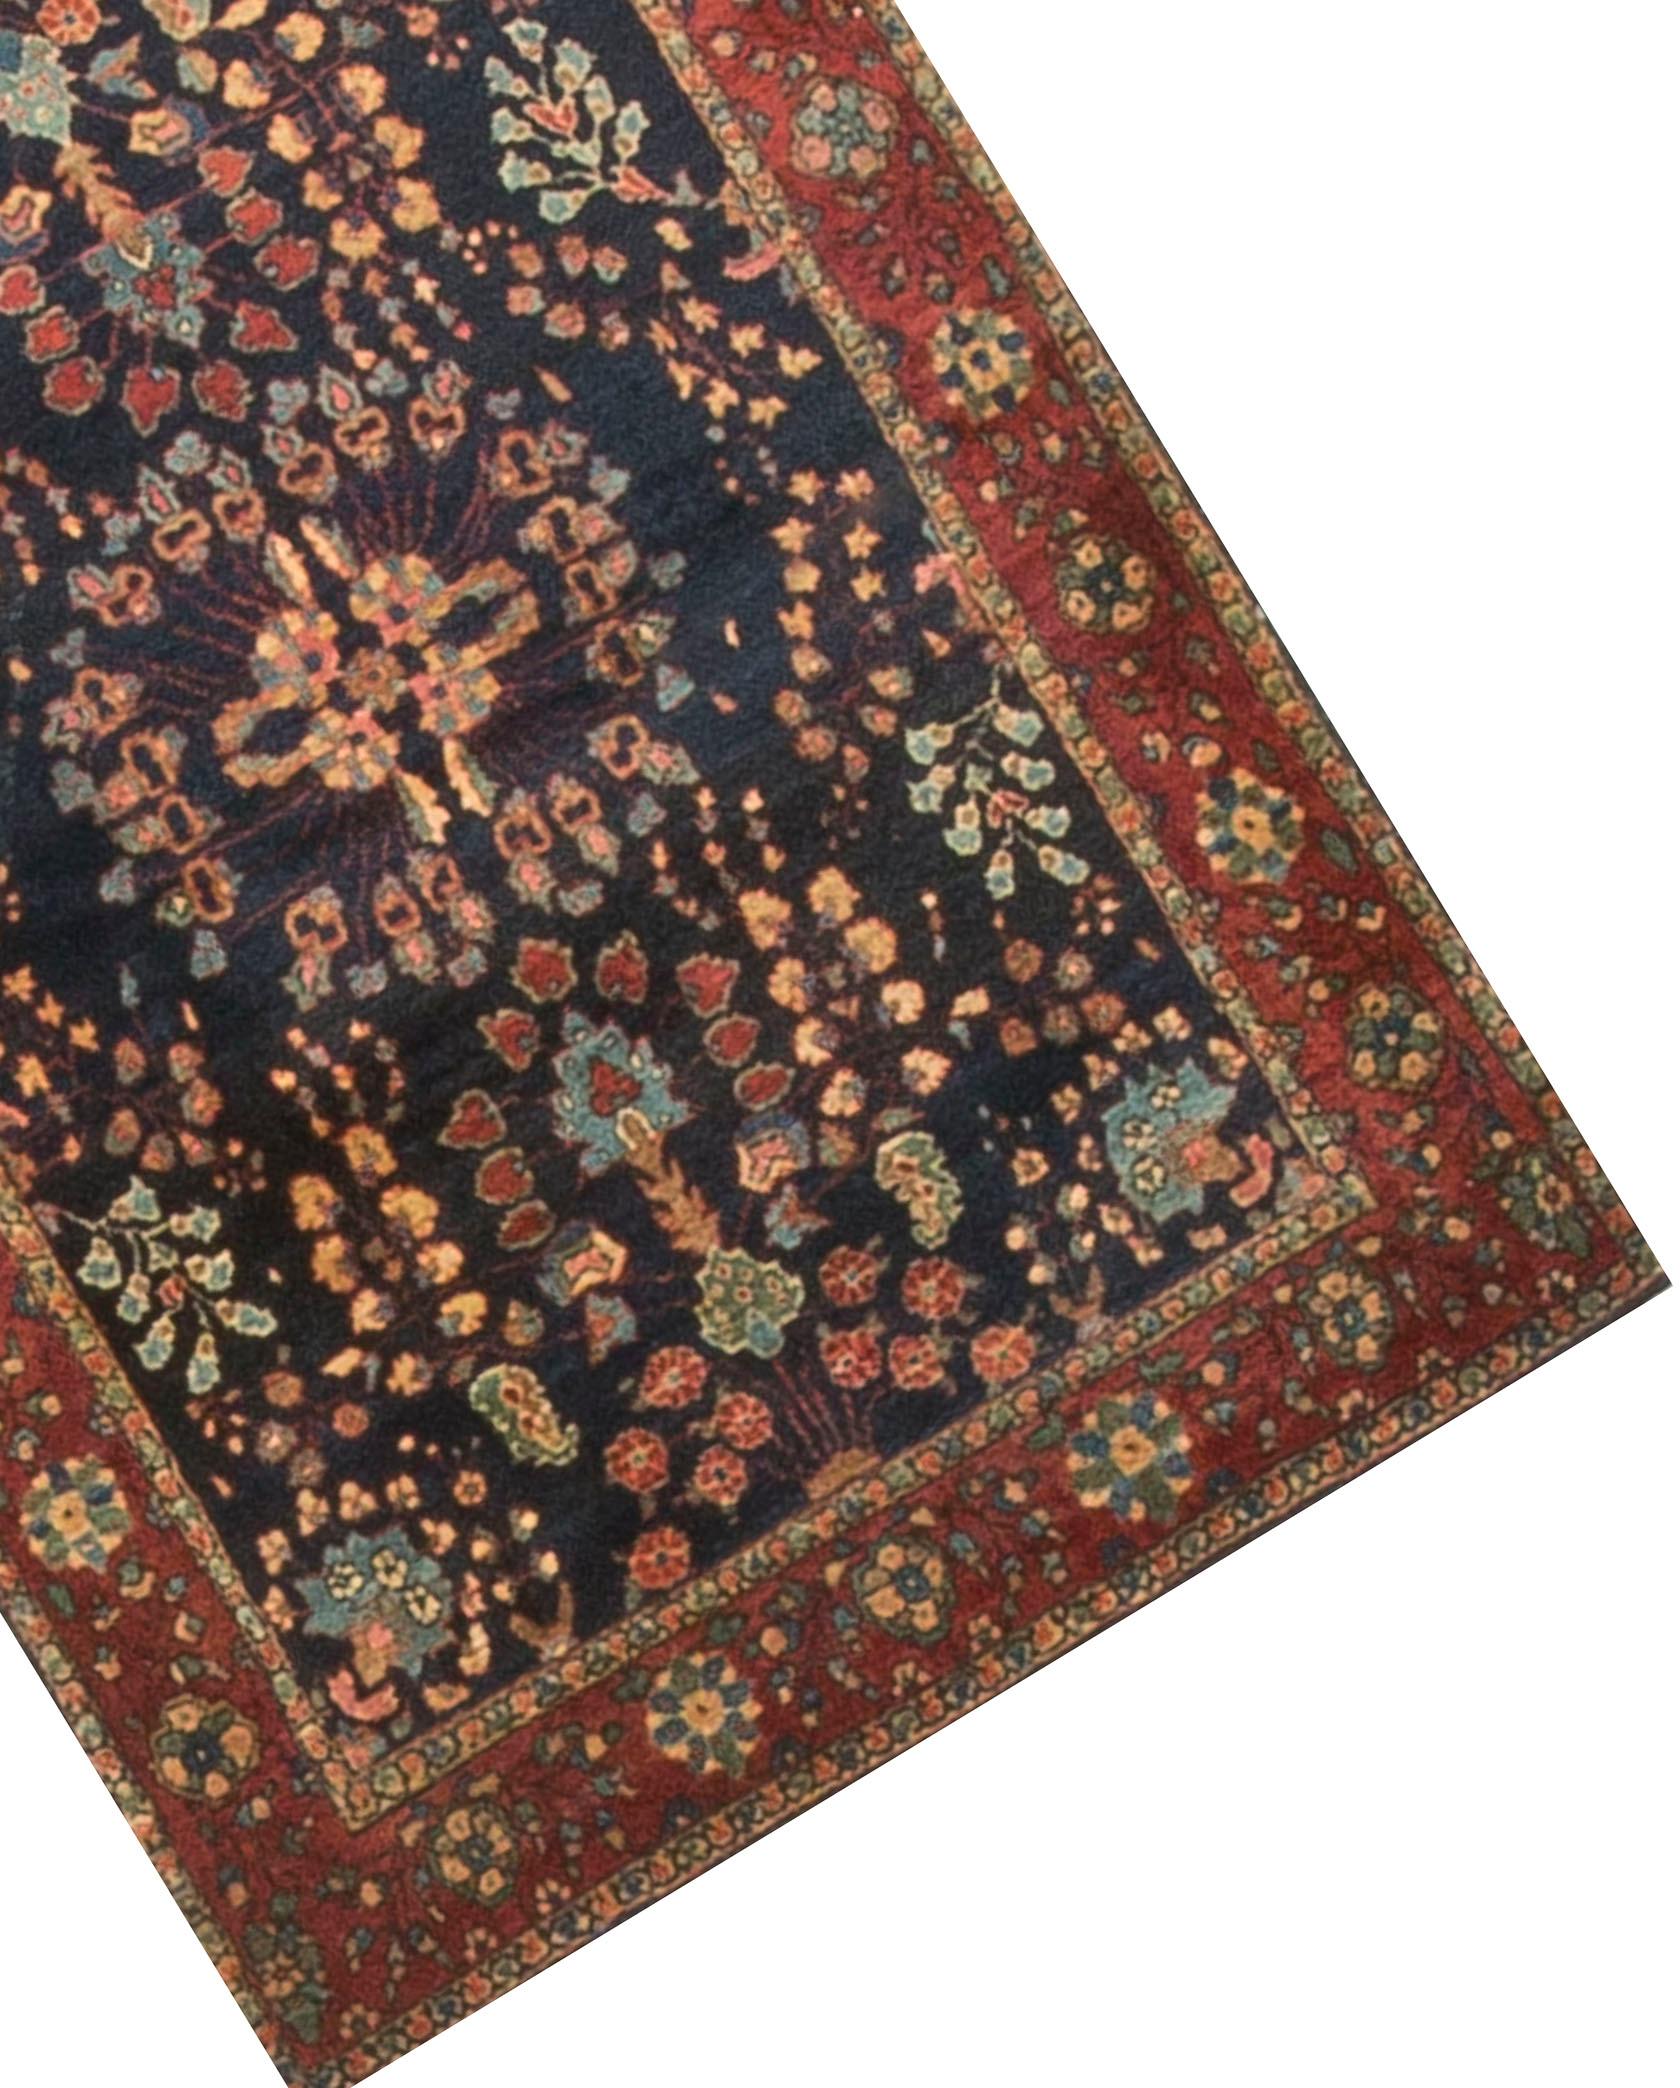 Le champ principal dramatique de ce petit sarouk persan des années 1940 brillera dans n'importe quel décor. La bordure rouge plus douce met en valeur les glorieux motifs floraux du champ du tapis.

 